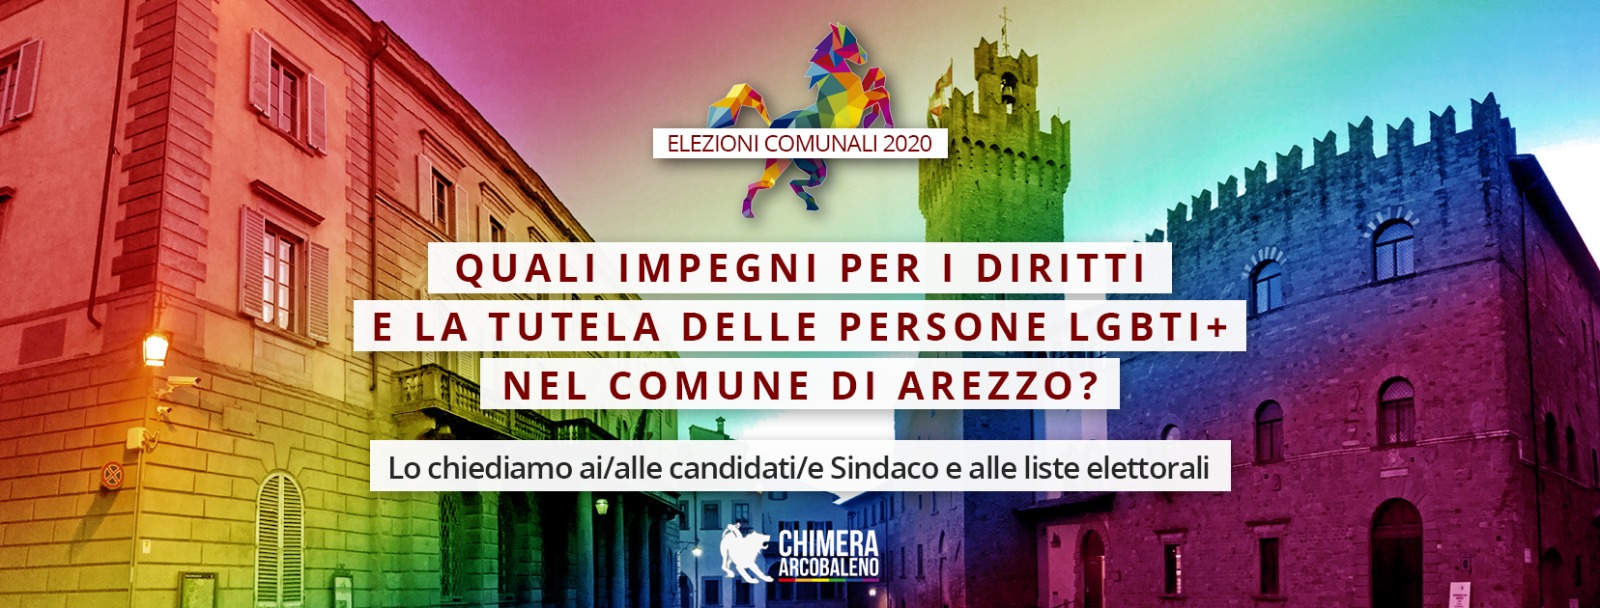 “Quali impegni per i diritti e la tutela delle persone LGBTI+ di Arezzo?”Chimera Arcobaleno lo chiede ai/alle candidati/e a Sindaco per la città